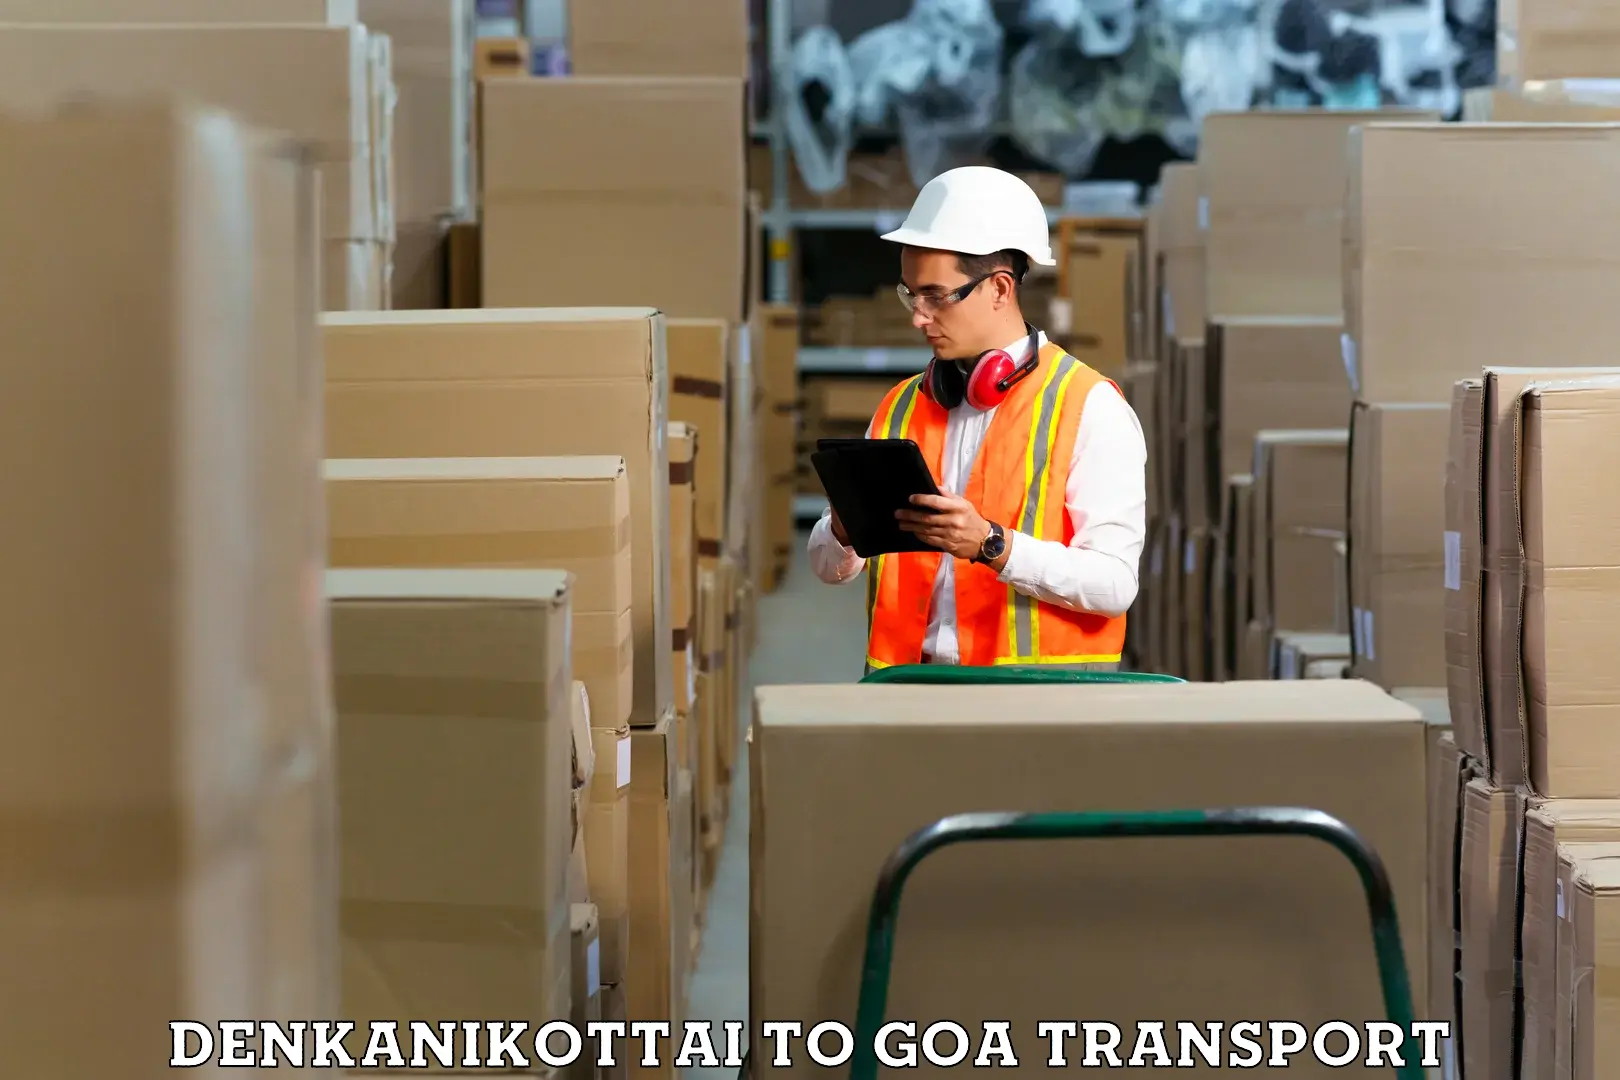 Express transport services in Denkanikottai to Goa University